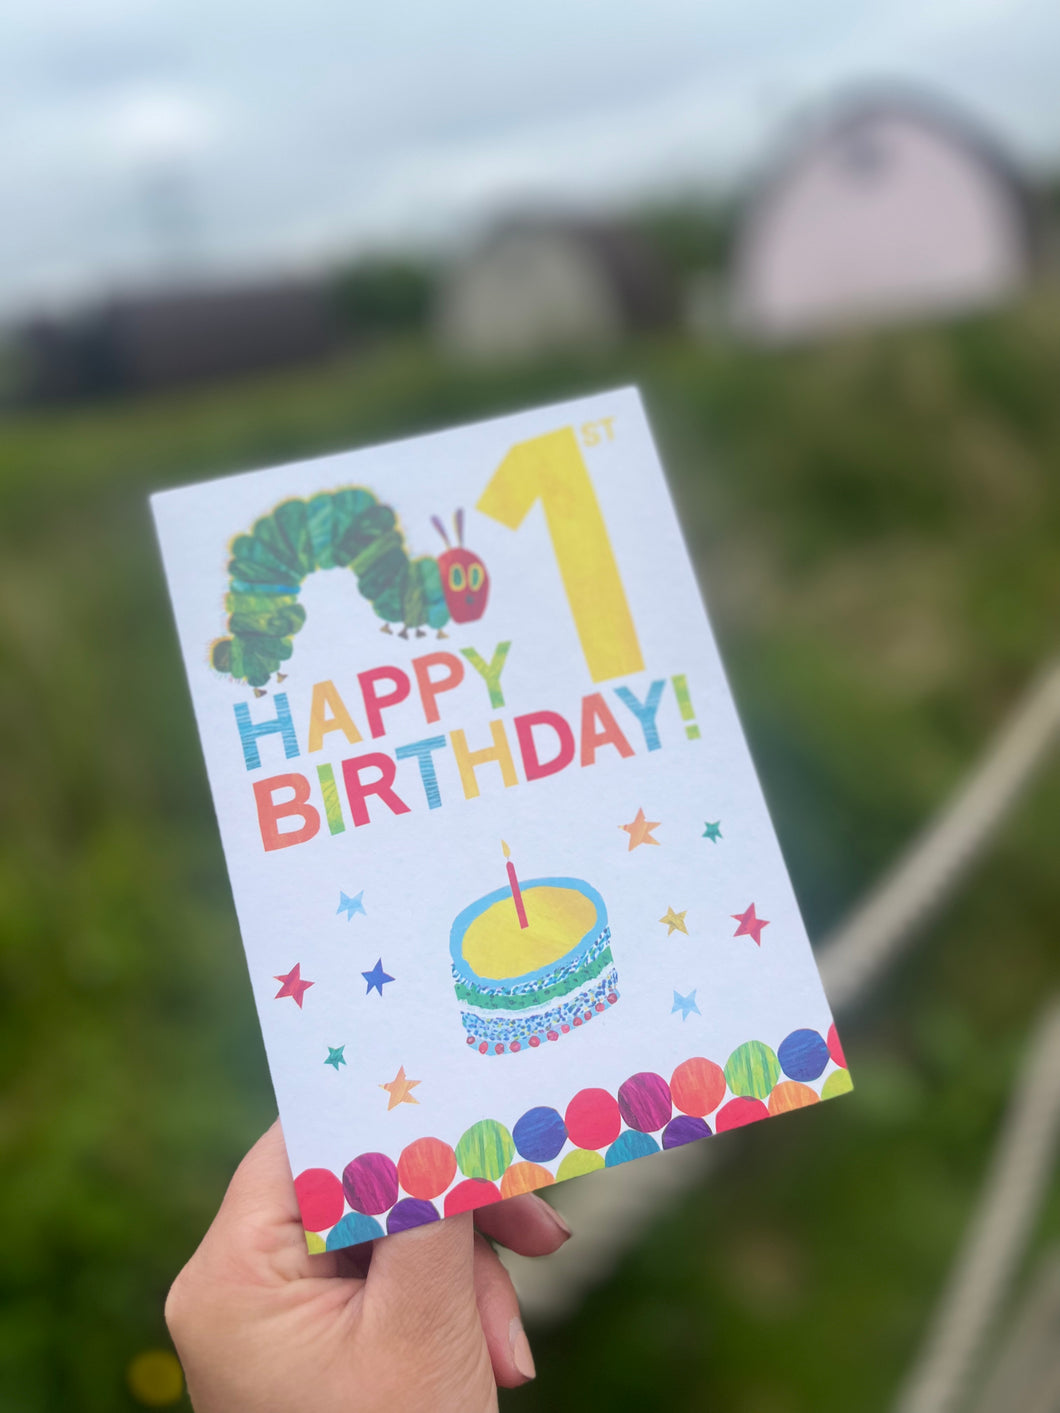 The Very Hungry Caterpillar Cupcake Birthday Gift Box